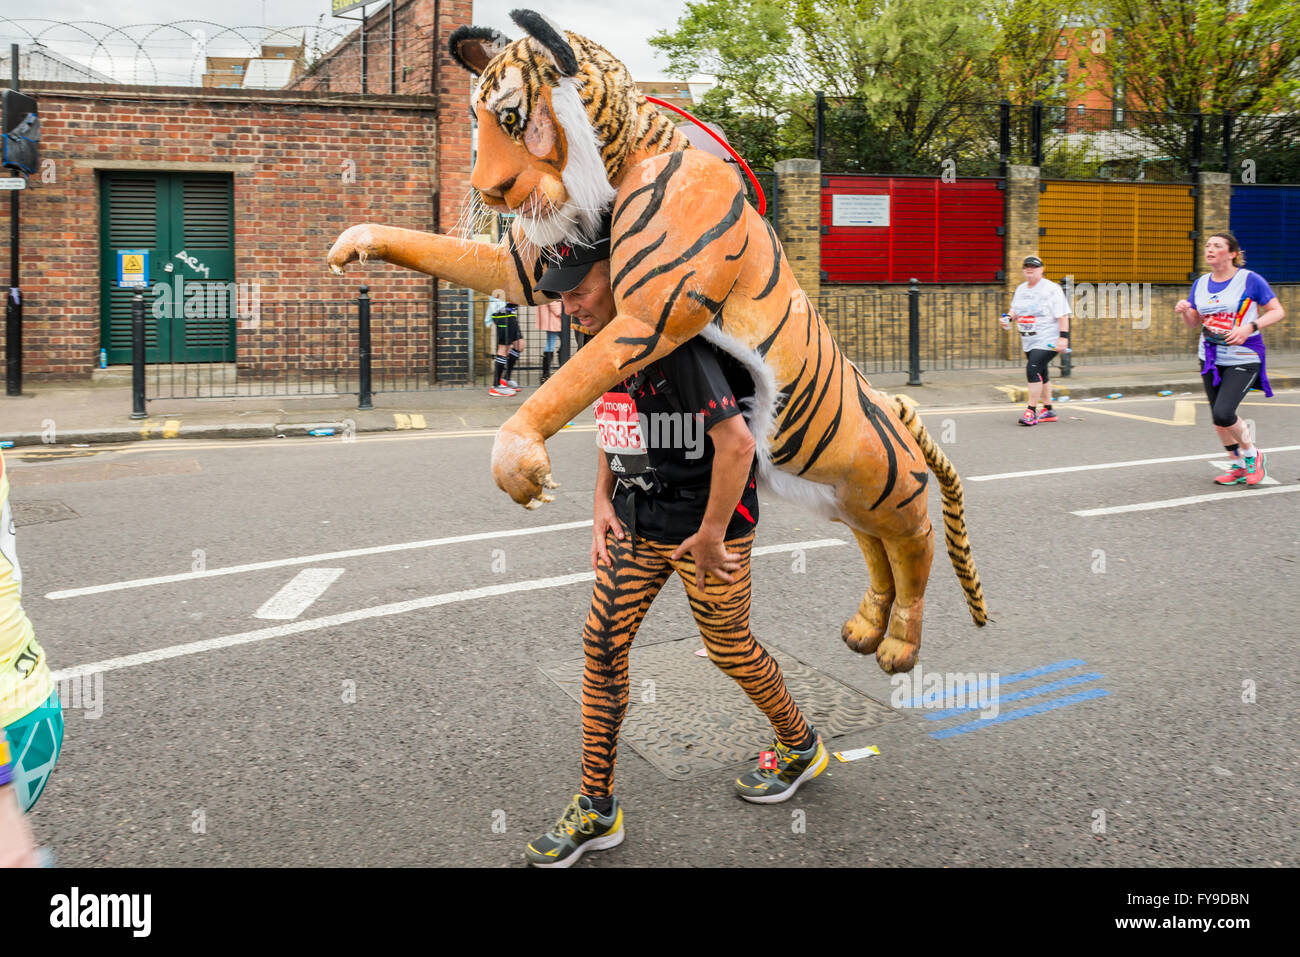 Londres, Royaume-Uni. 24 avril, 2016. Marathon de Londres 2016. Ossature en grand costume. Costume Tiger Crédit : Elena/Chaykina Alamy Live News Banque D'Images